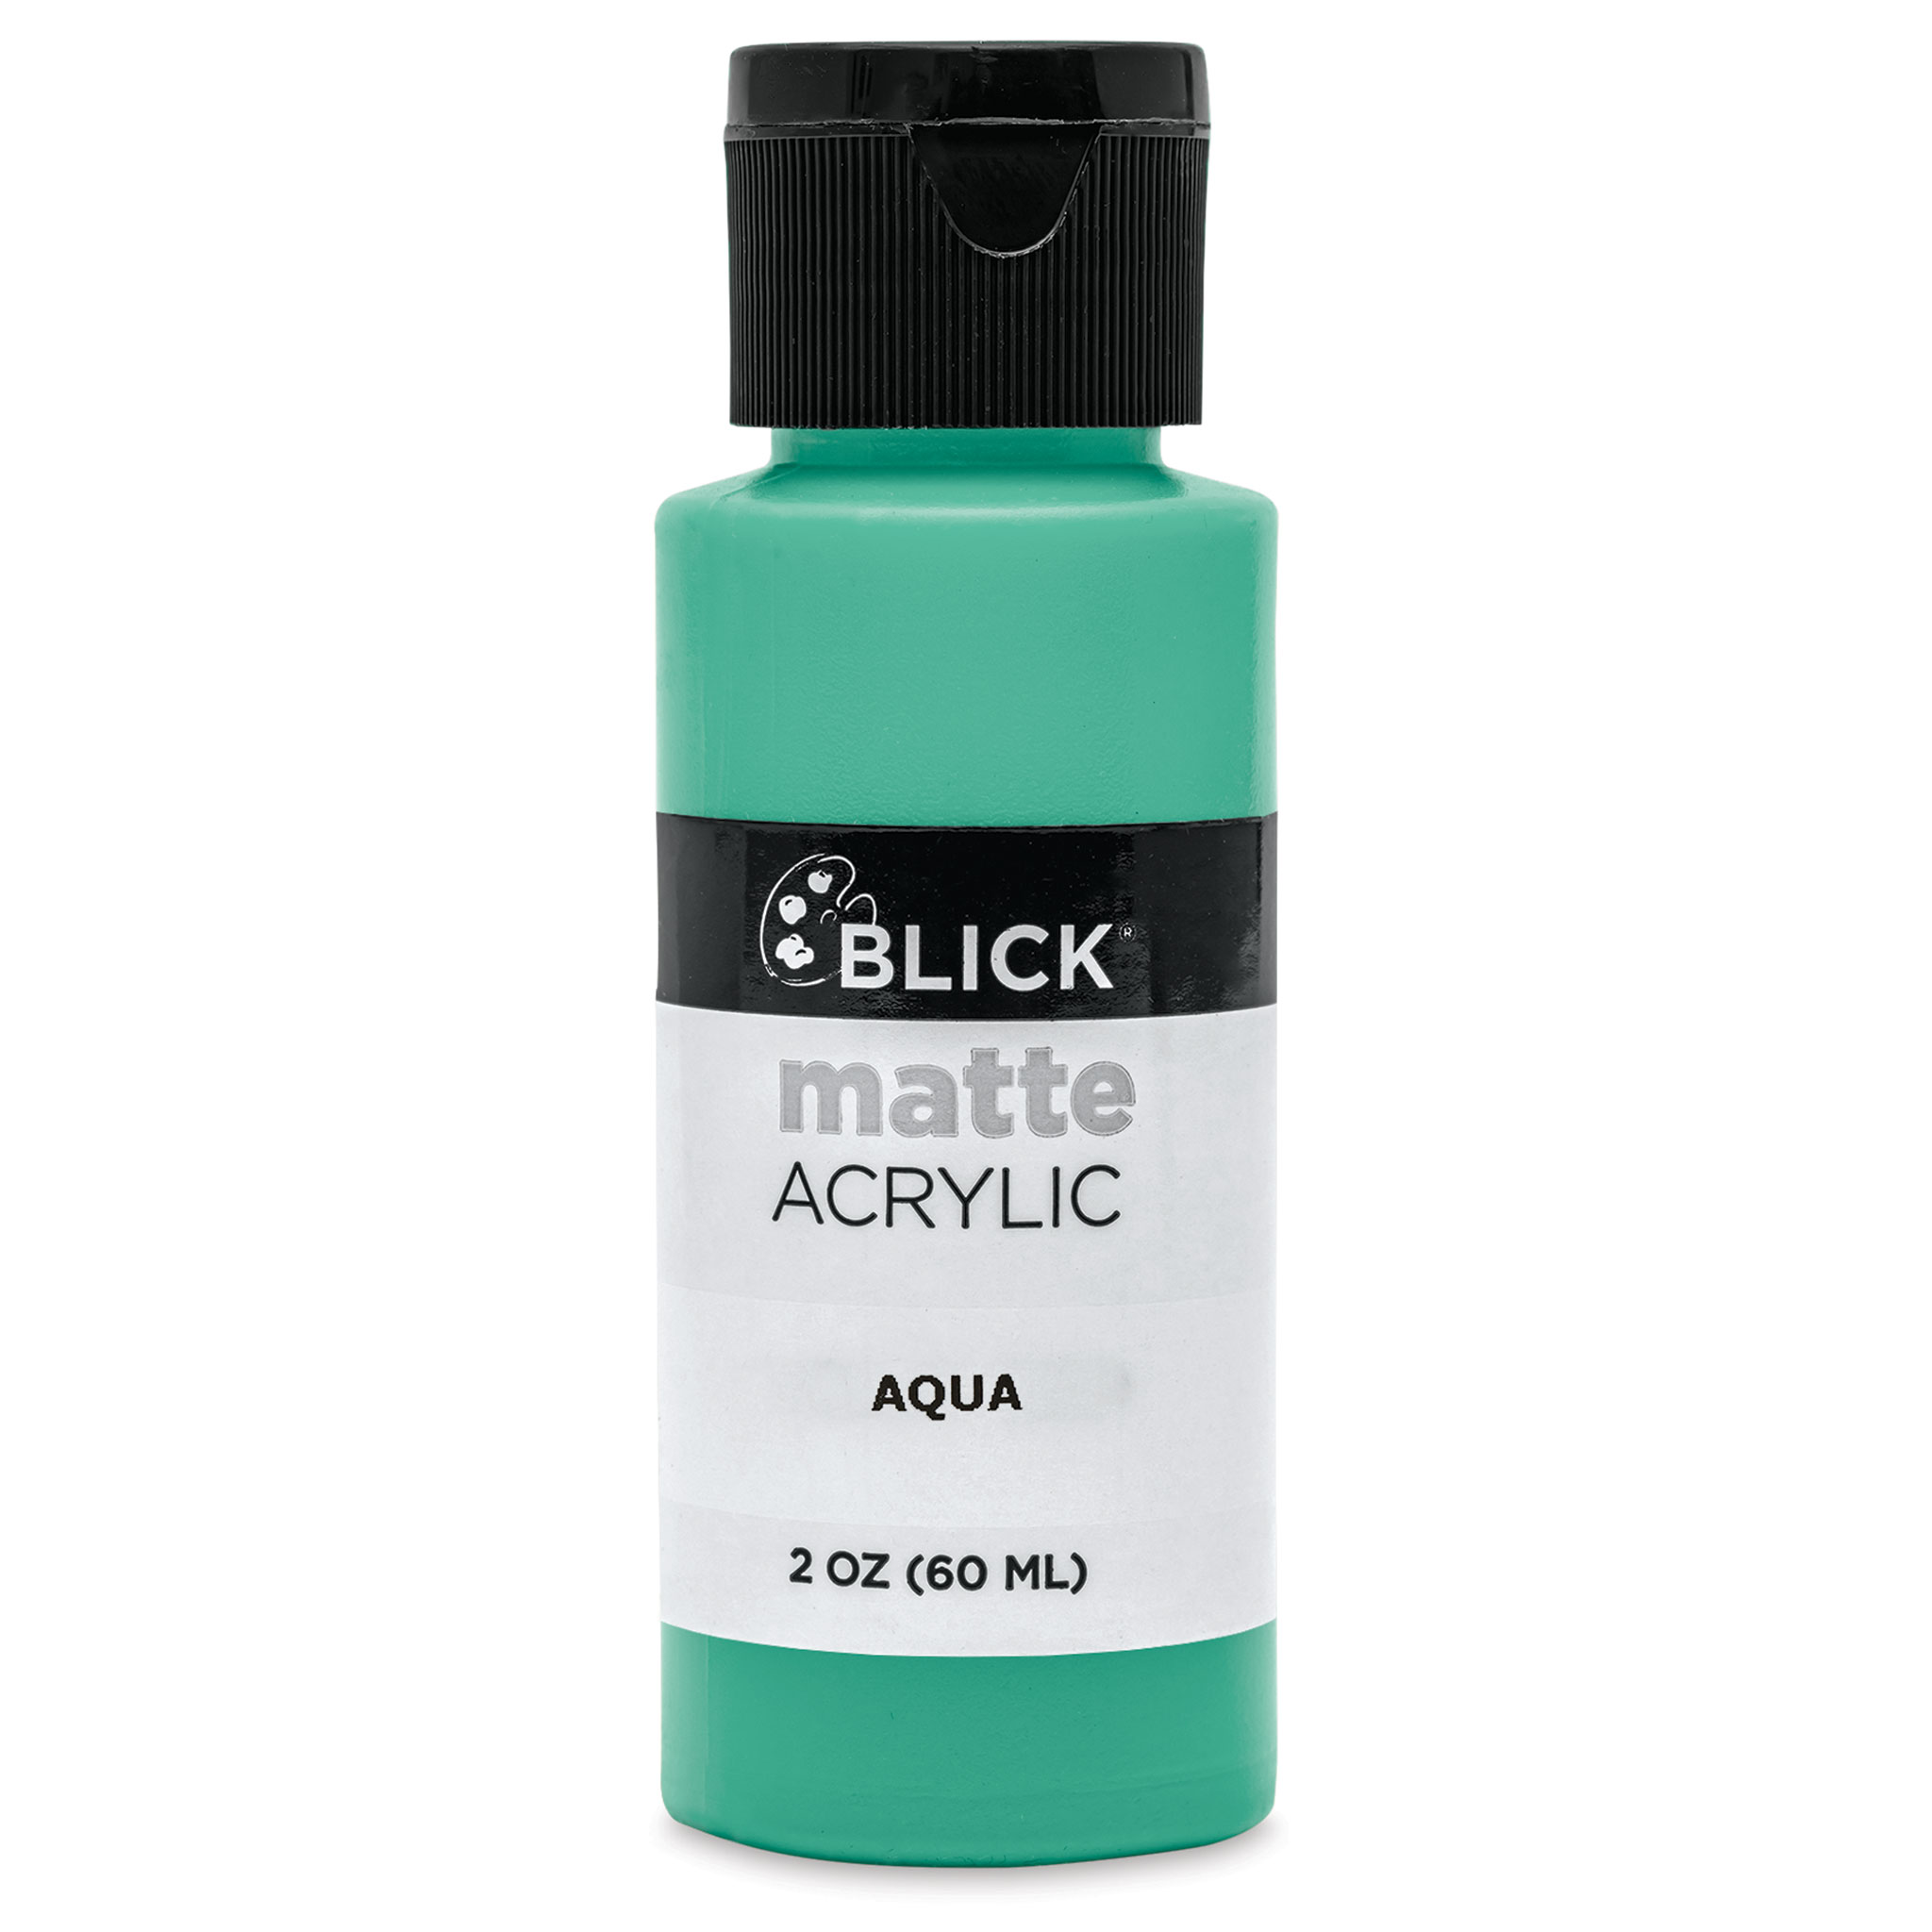 Blick Matte Acrylic - Aqua, 2 oz Bottle